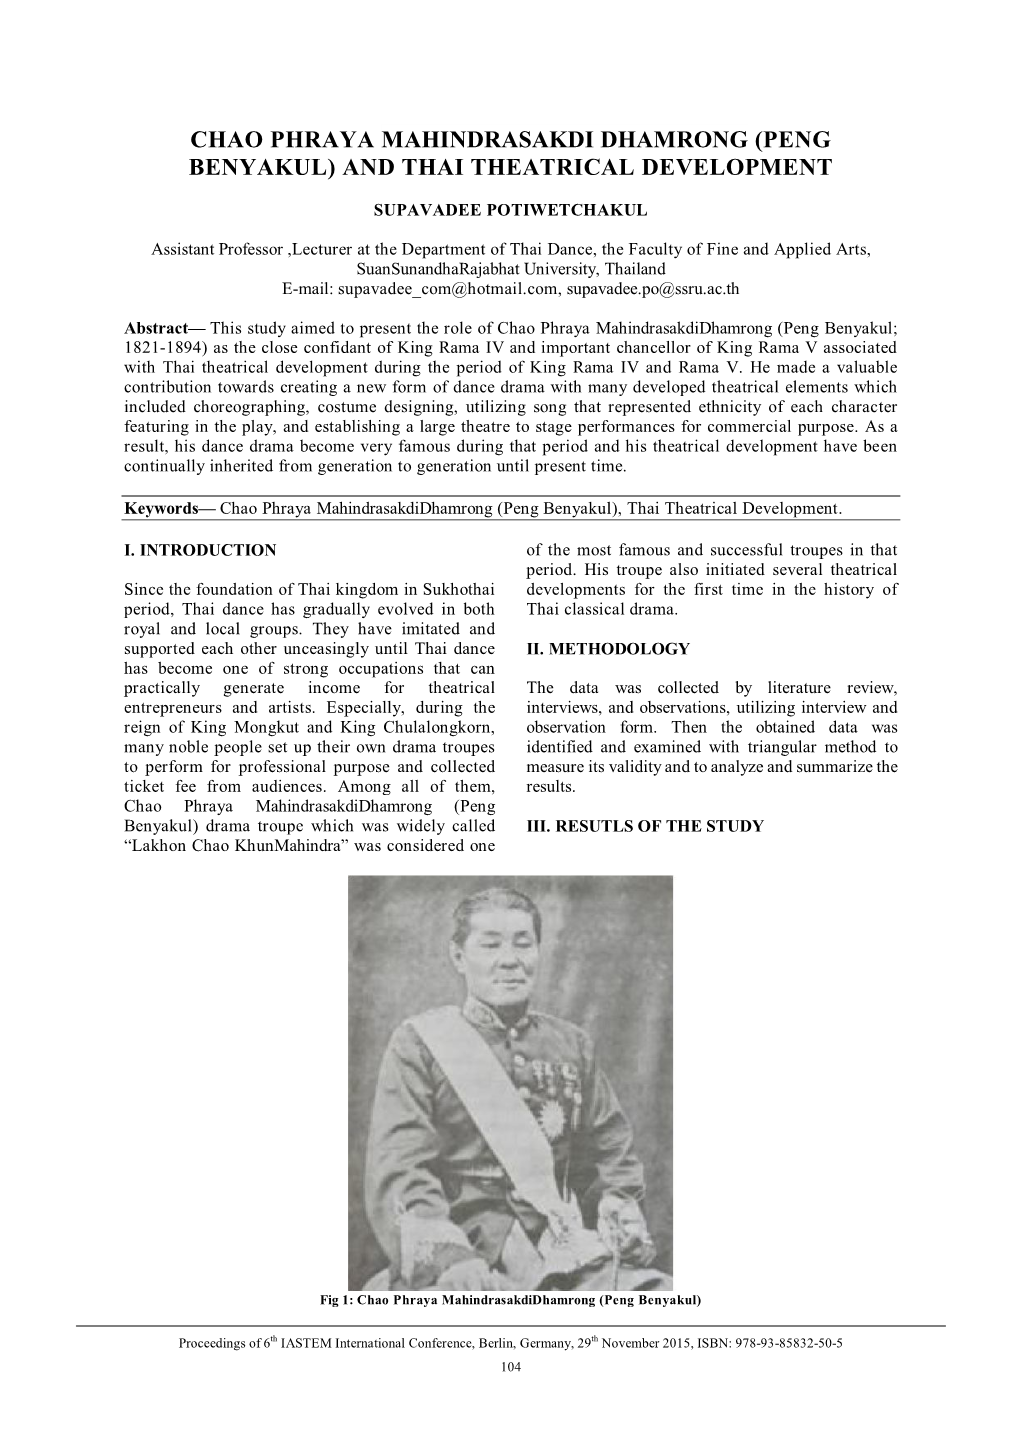 Chao Phraya Mahindrasakdi Dhamrong (Peng Benyakul) and Thai Theatrical Development